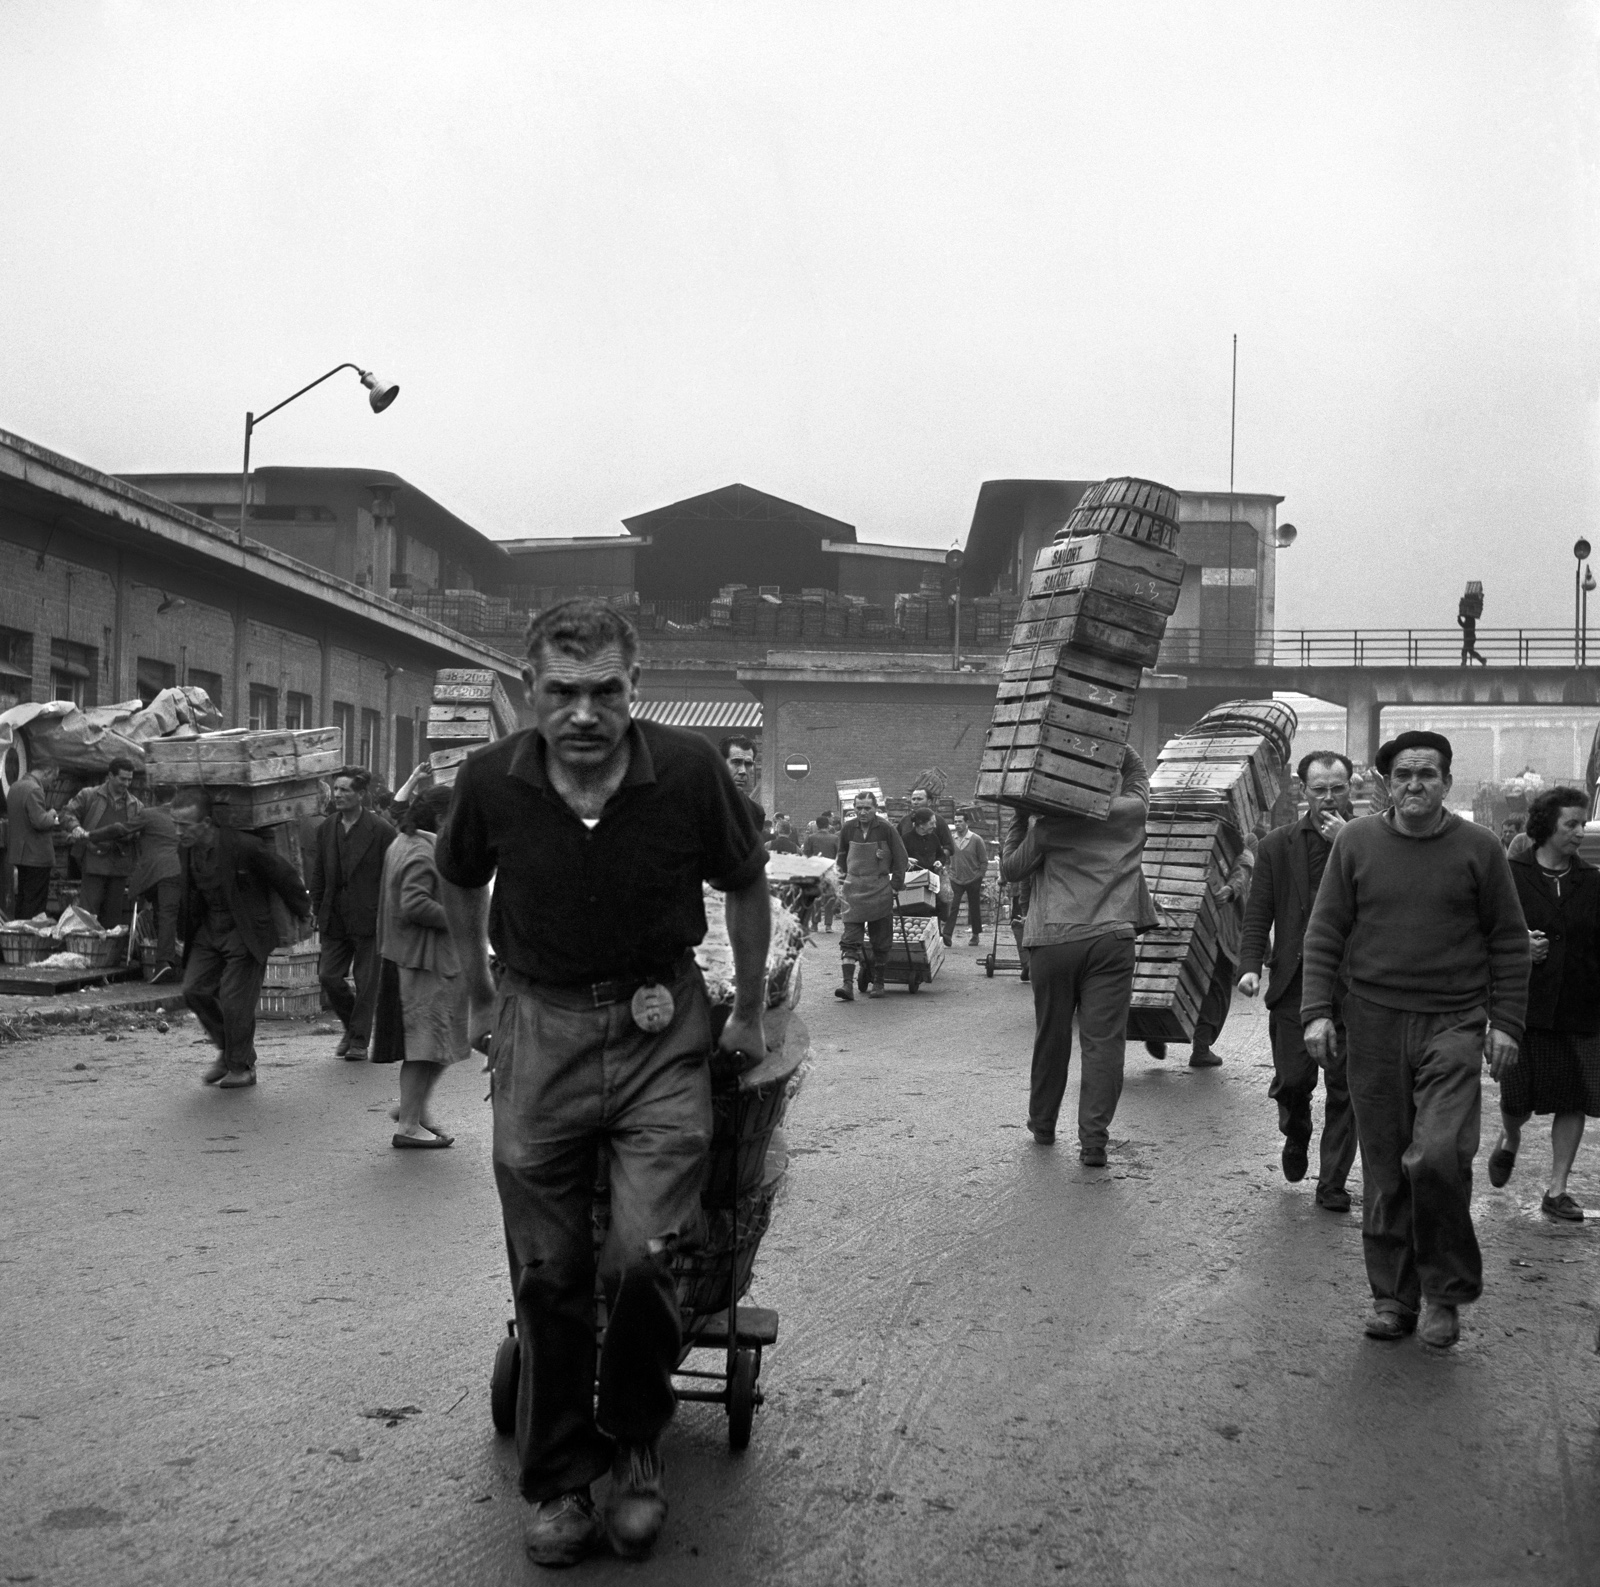 Imagen en blanco y negro de trabajadores del mercado llevando cajas